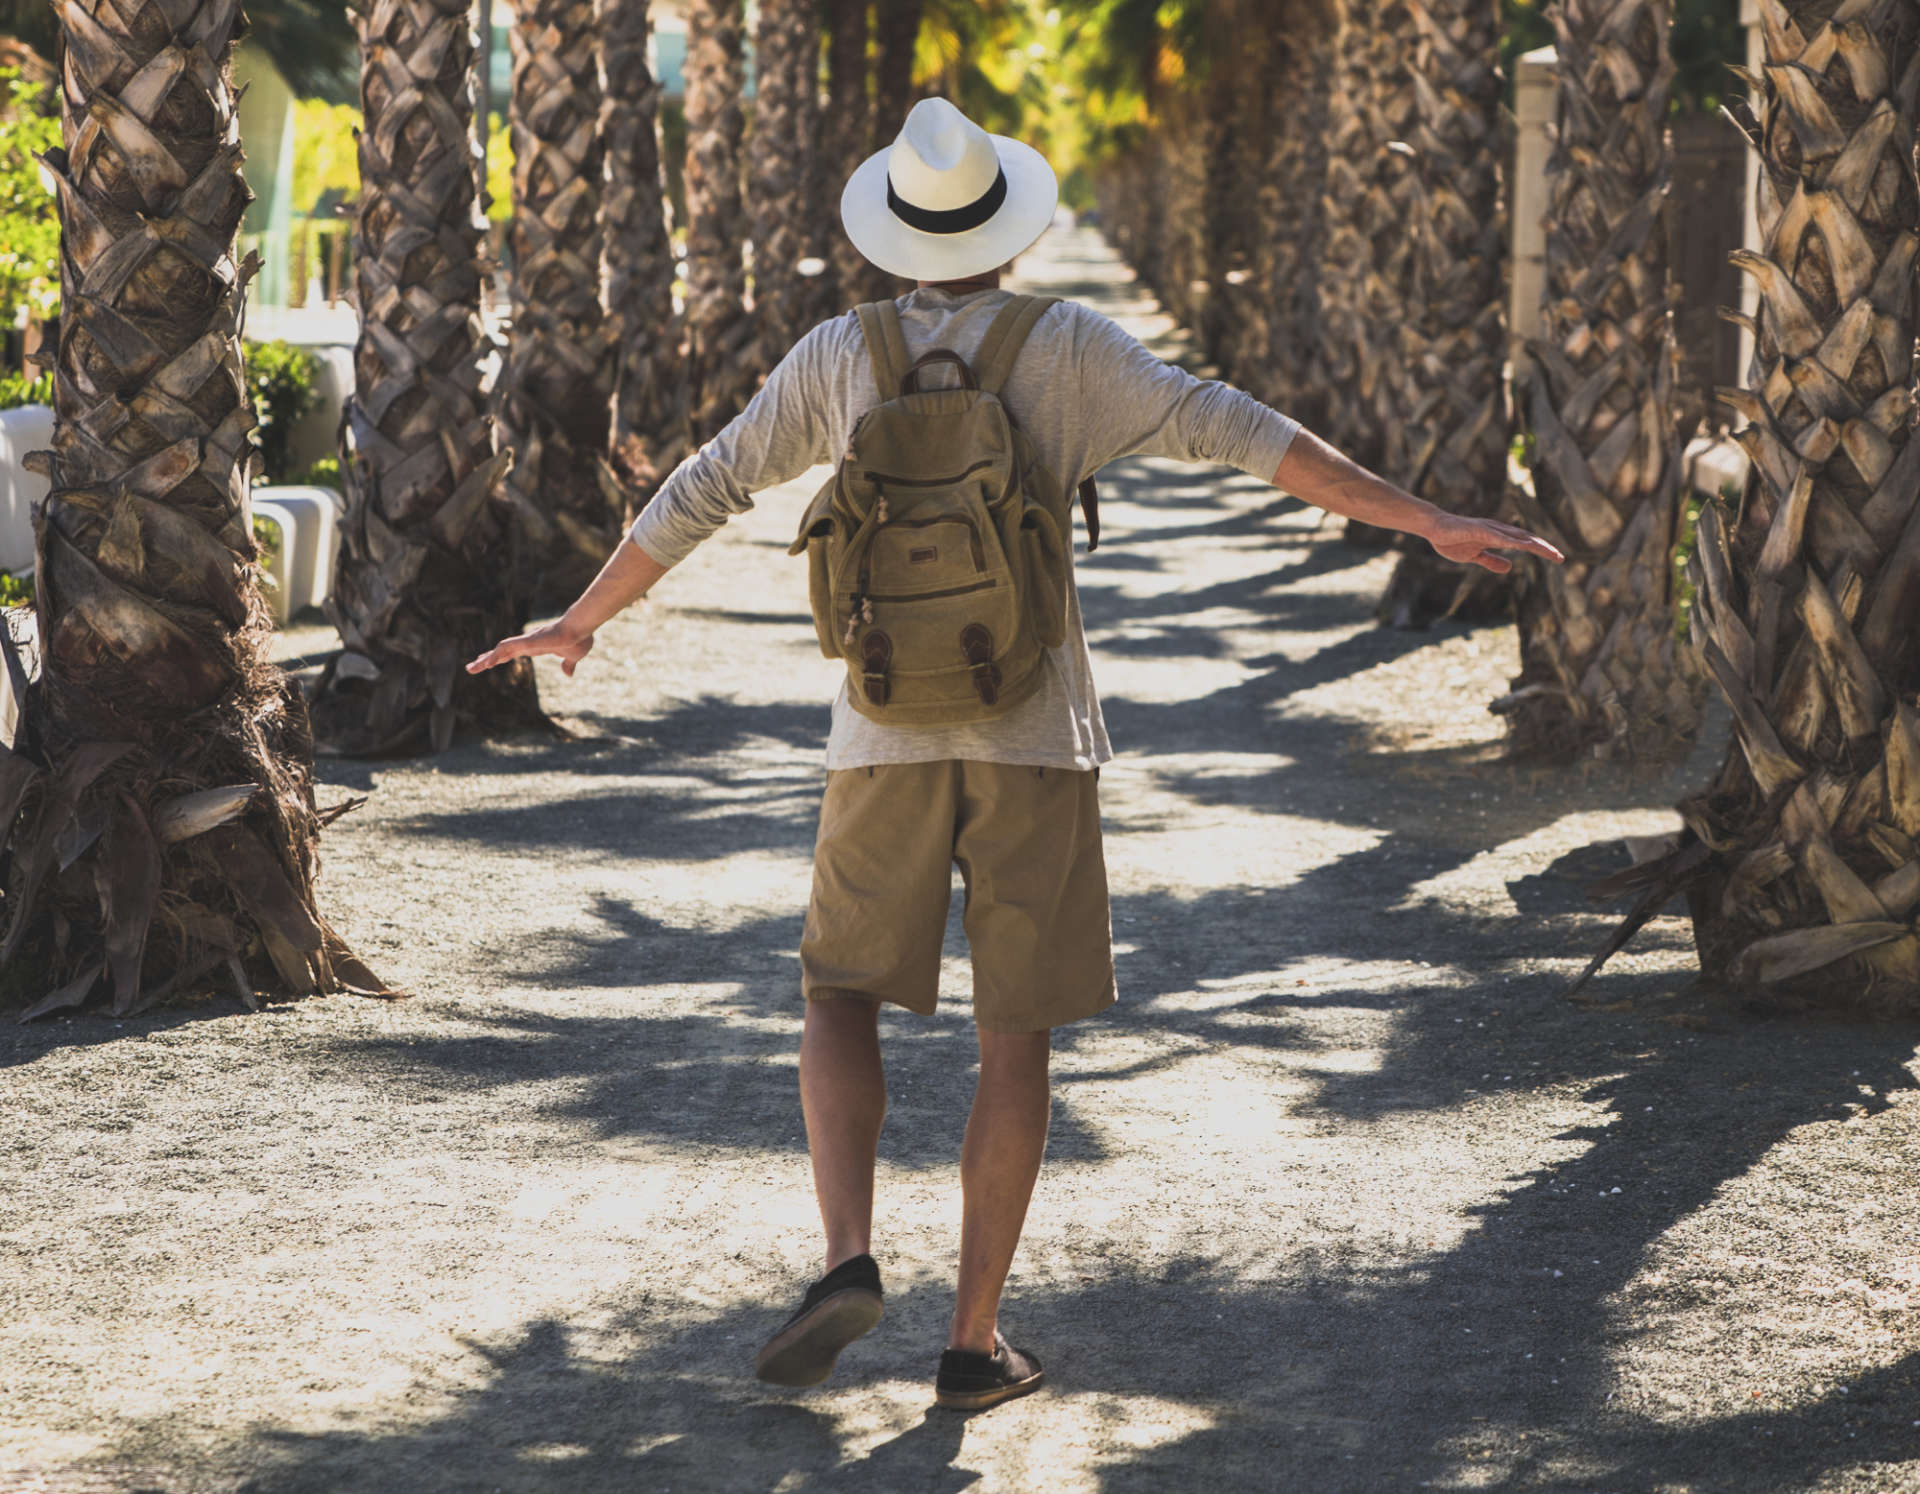 Excursiwons en Polynésie française, un homme fait une randonnée dans la nature entourée de palmiers